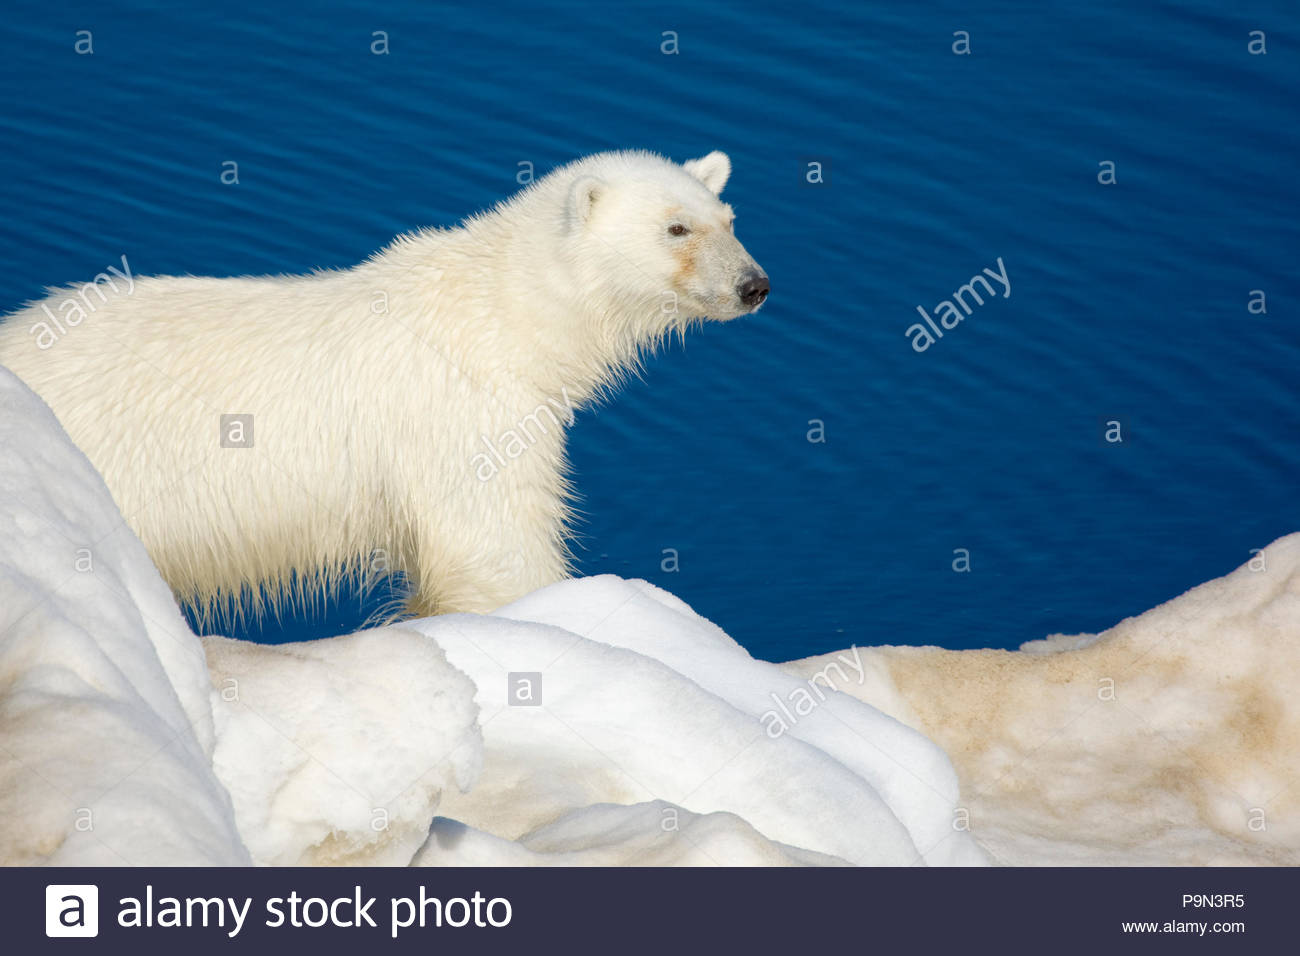 Orso polare, Ursus maritimus, sulla banchisa a bordo d'acqua. Foto Stock